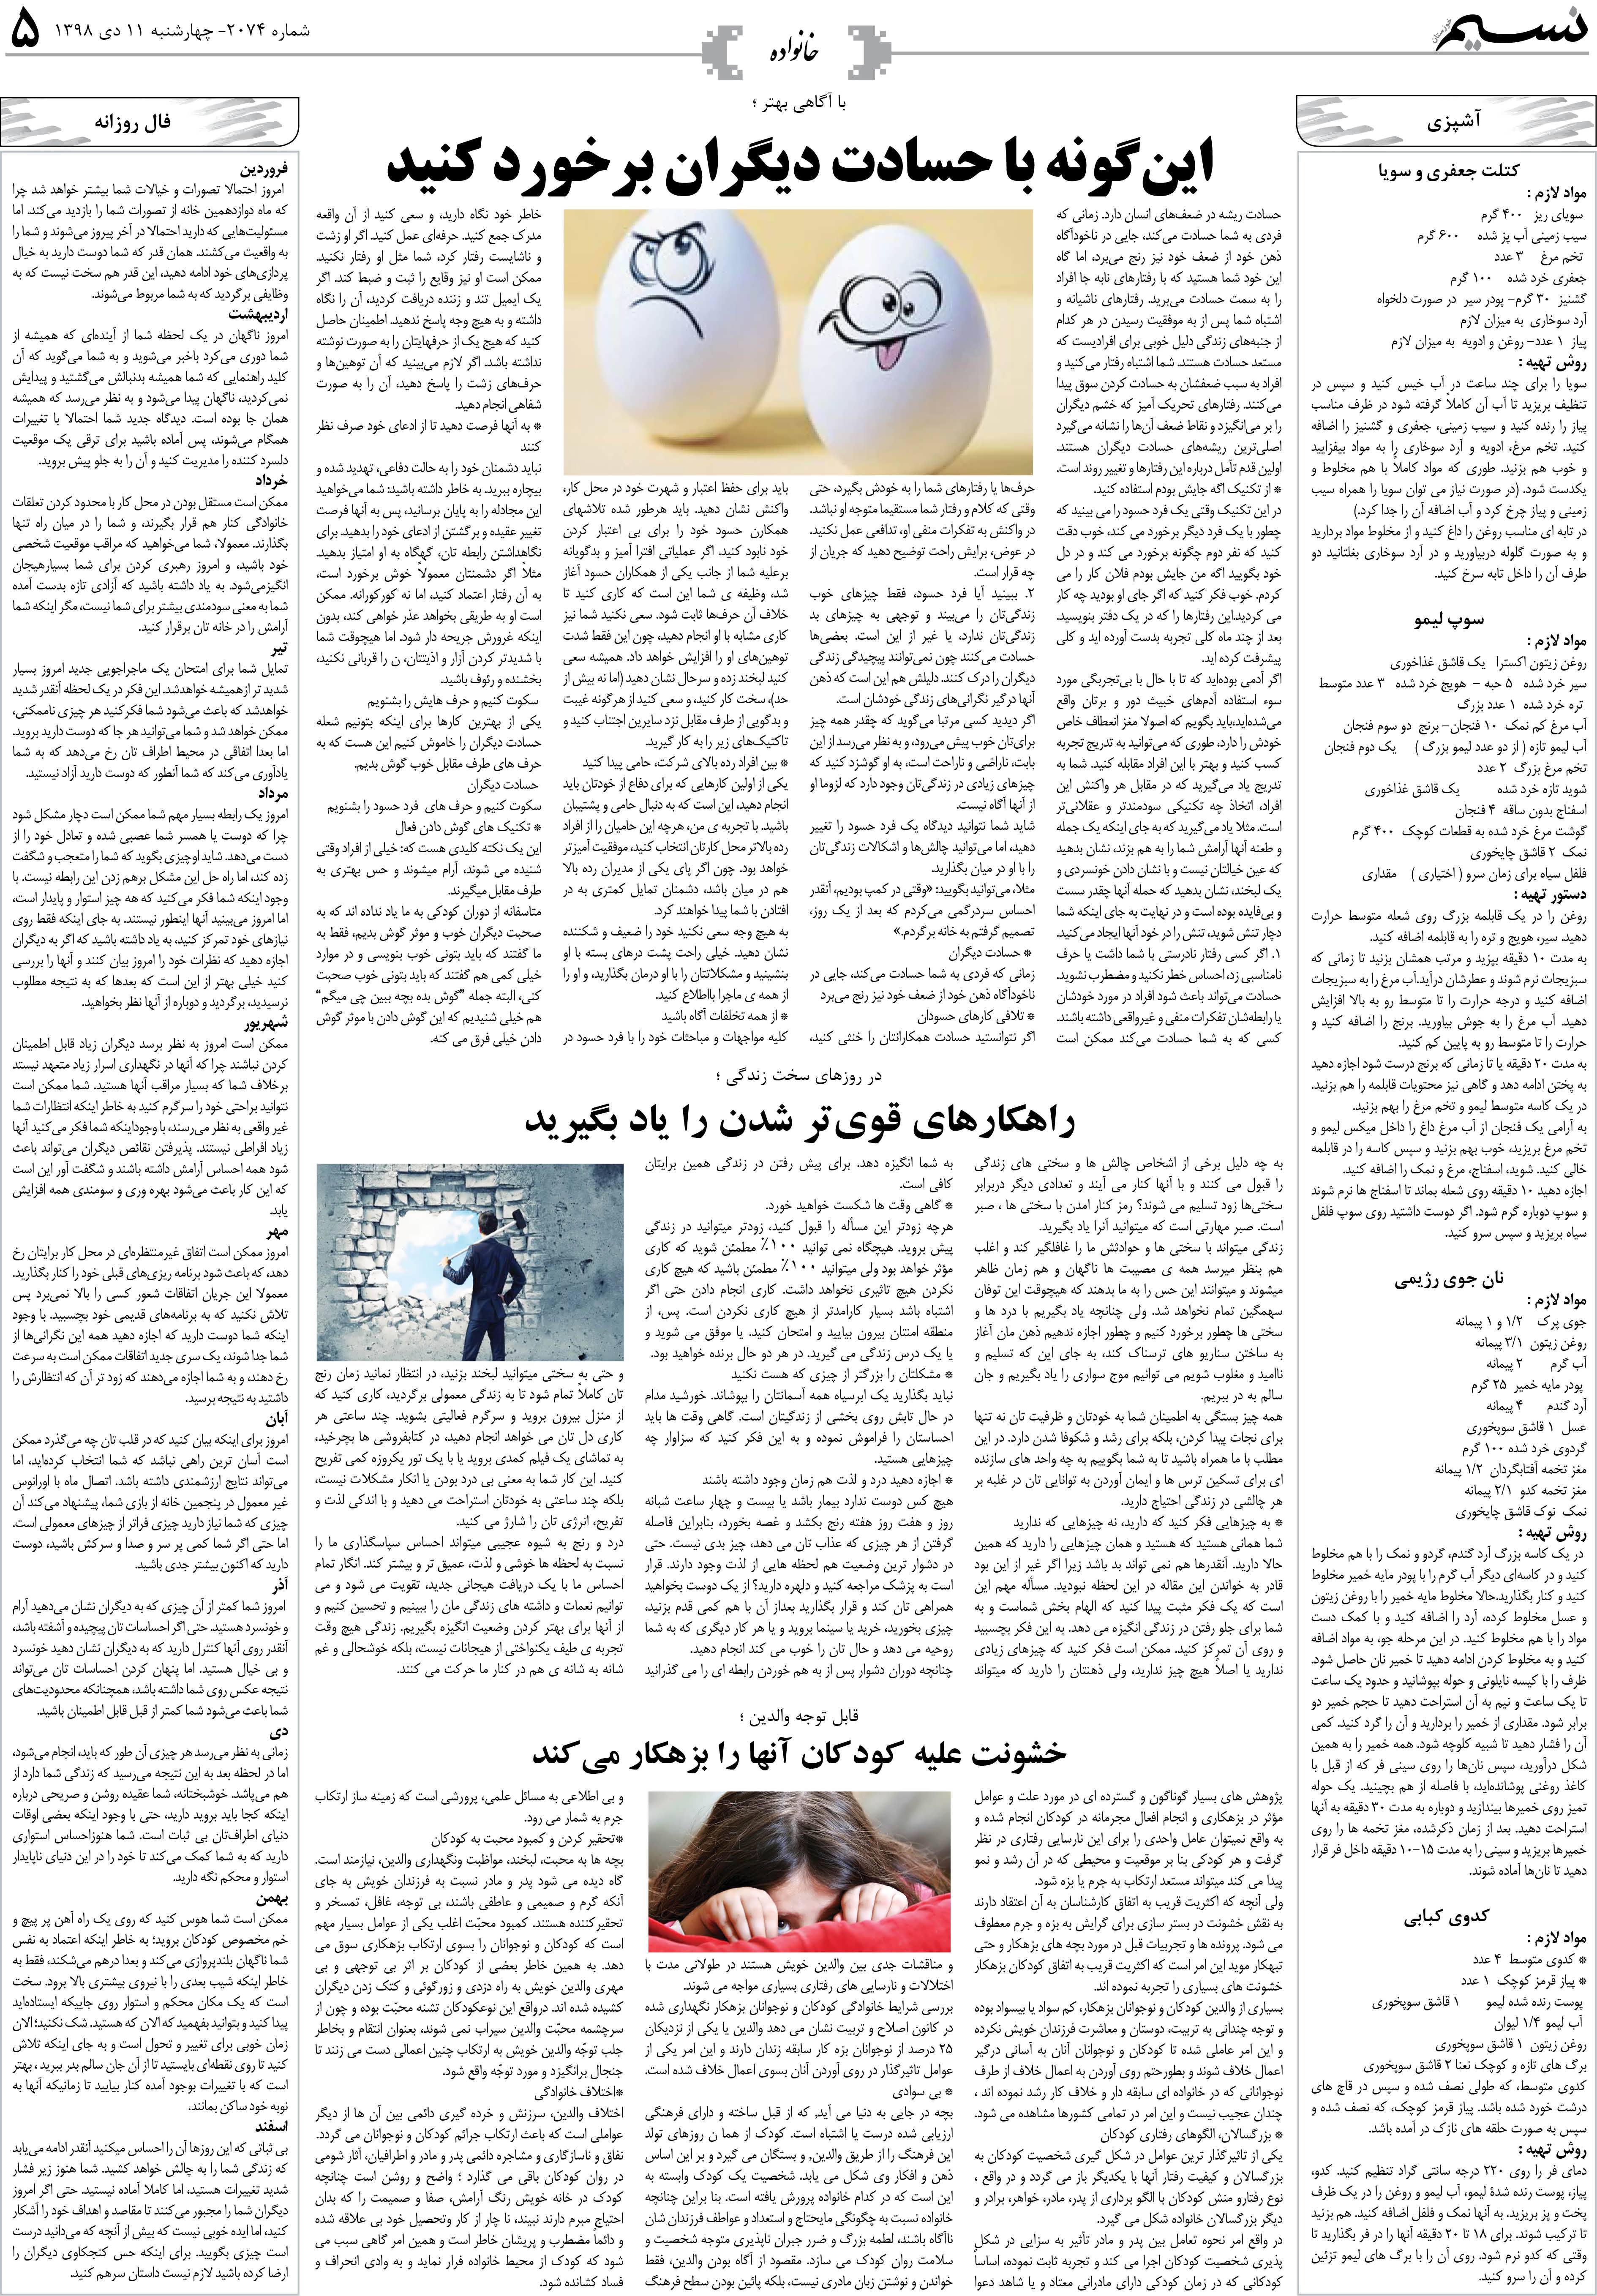 صفحه خانواده روزنامه نسیم شماره 2074